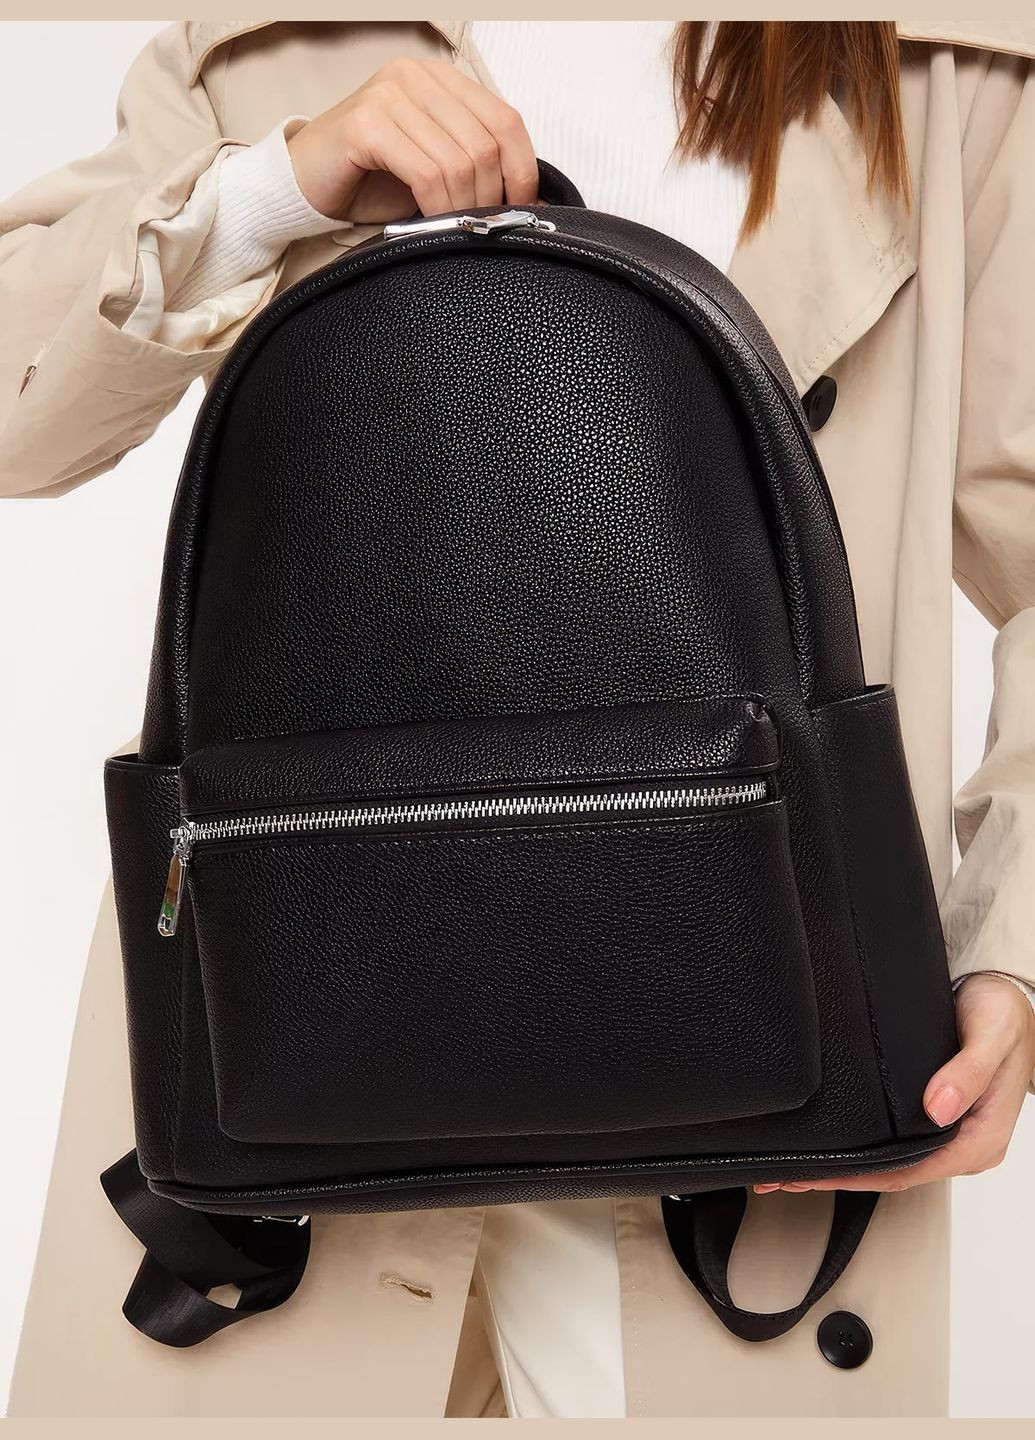 Стильный повседневный женский рюкзак городской стиль / модный / молодежный рюкзак для девушек 70150 OnePro (284728456)